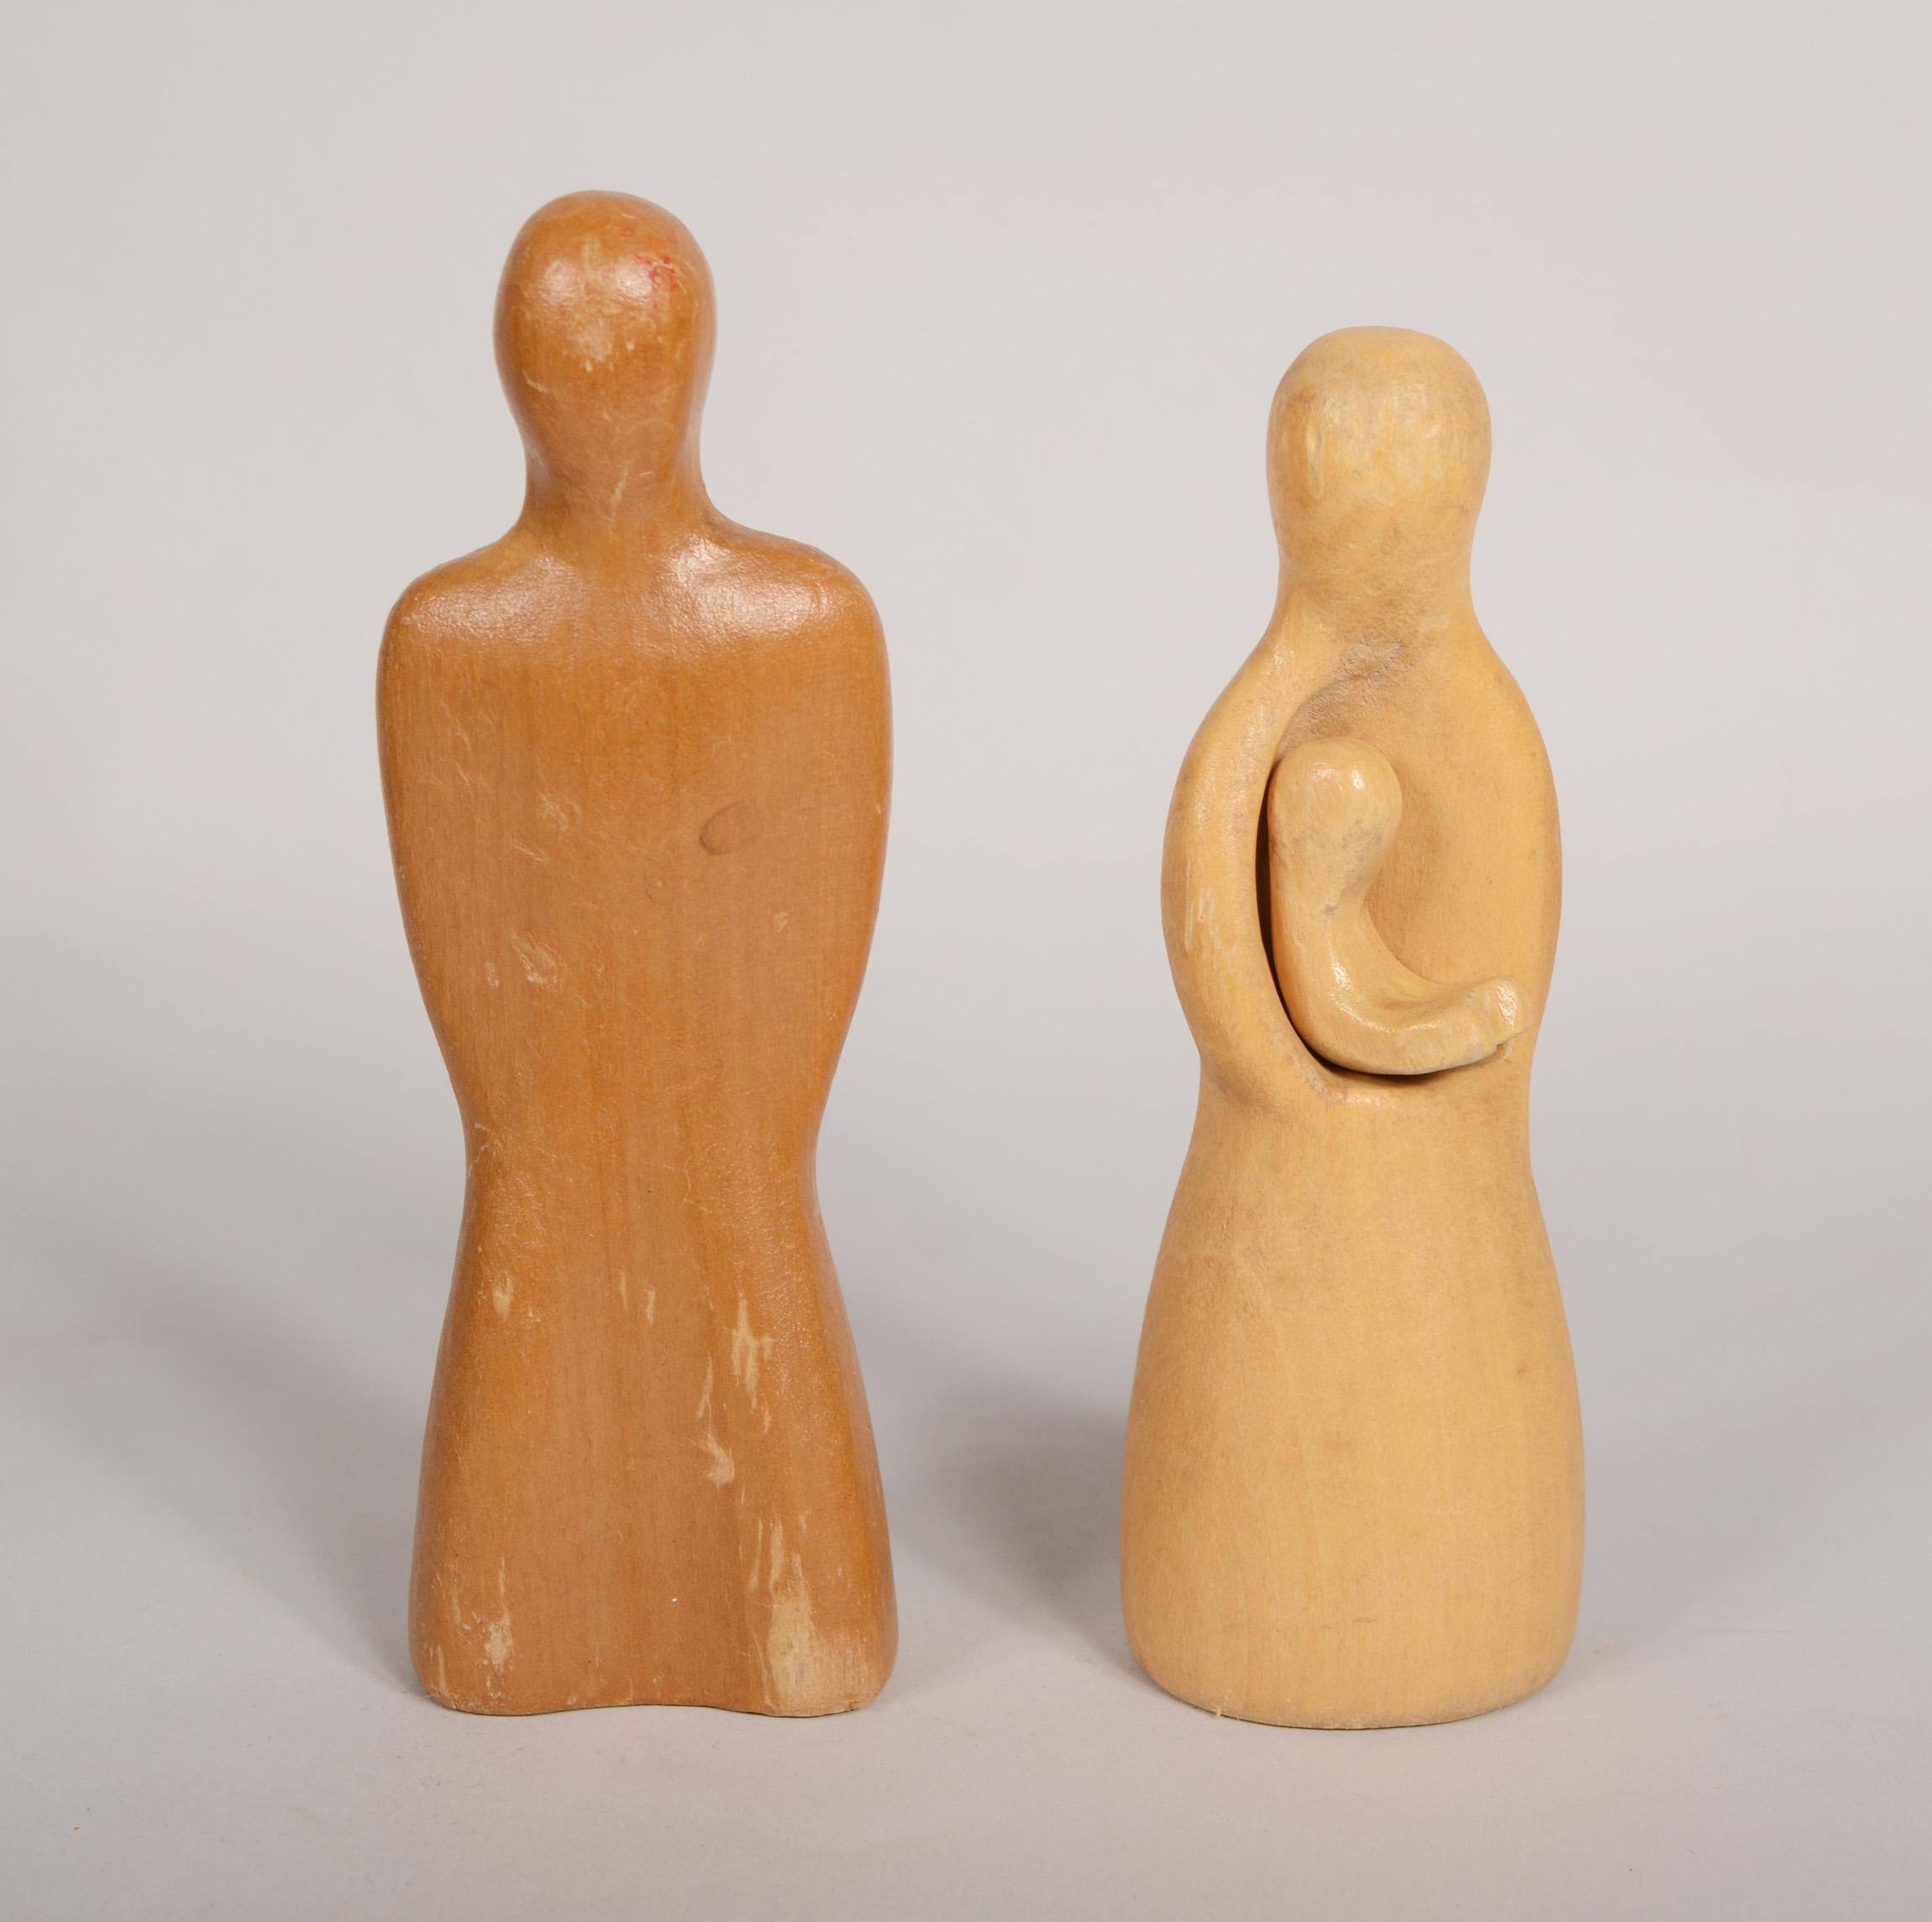 Famille de jouets en bois sculpté par Antonio Vitali, concepteur suisse de jouets. Vitali a conçu cet ensemble pour Creative Playthings en 1954. Ils ont été commercialisés sous le nom de Playforms. L'ensemble comprend un père, une mère tenant un